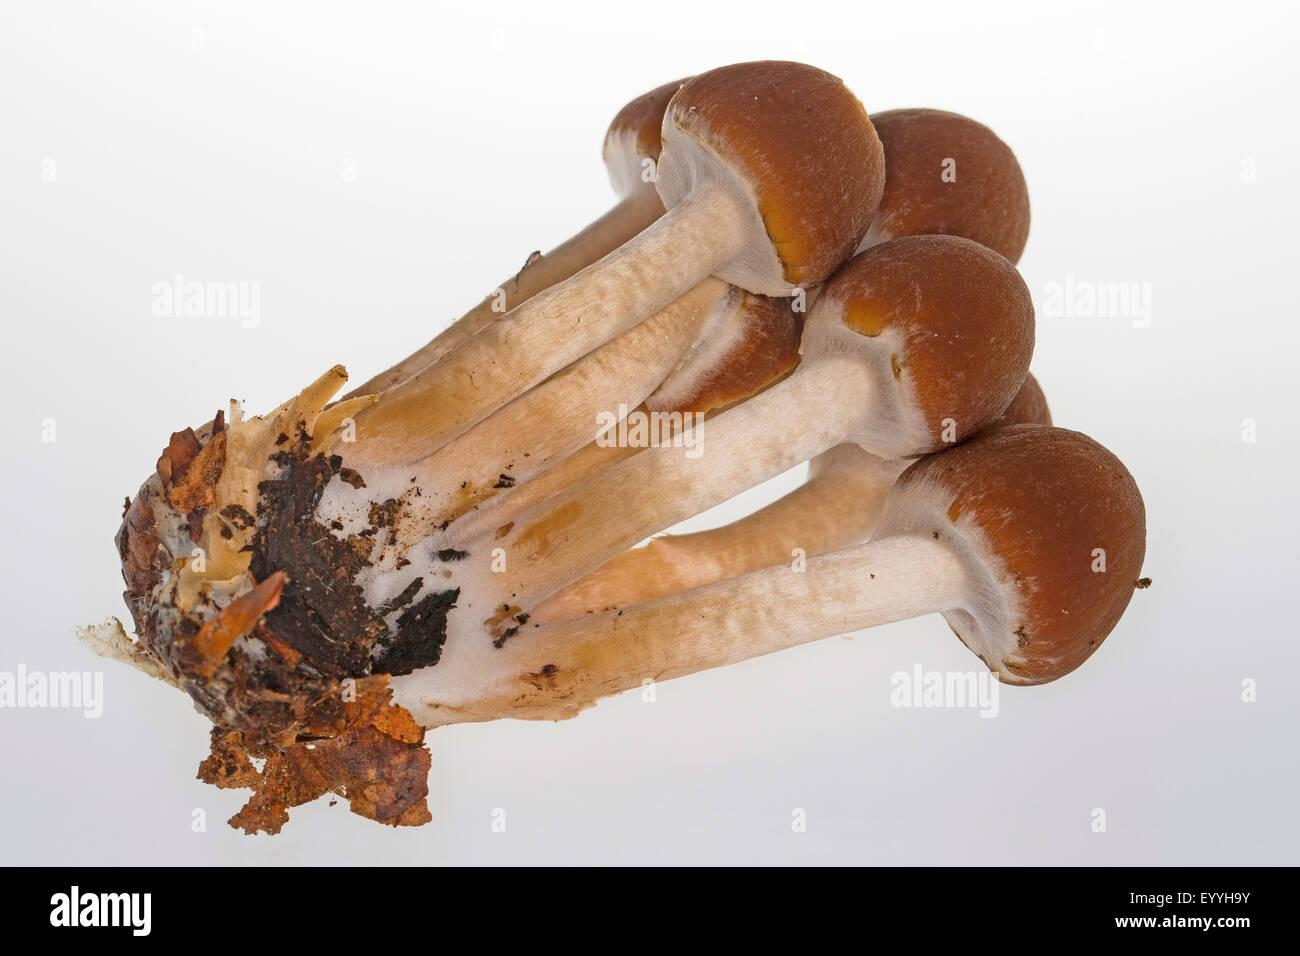 Moncone comune brittlestem (Psathyrella piluliformis, Psathyrelle hydrophila), intaglio, Germania Foto Stock